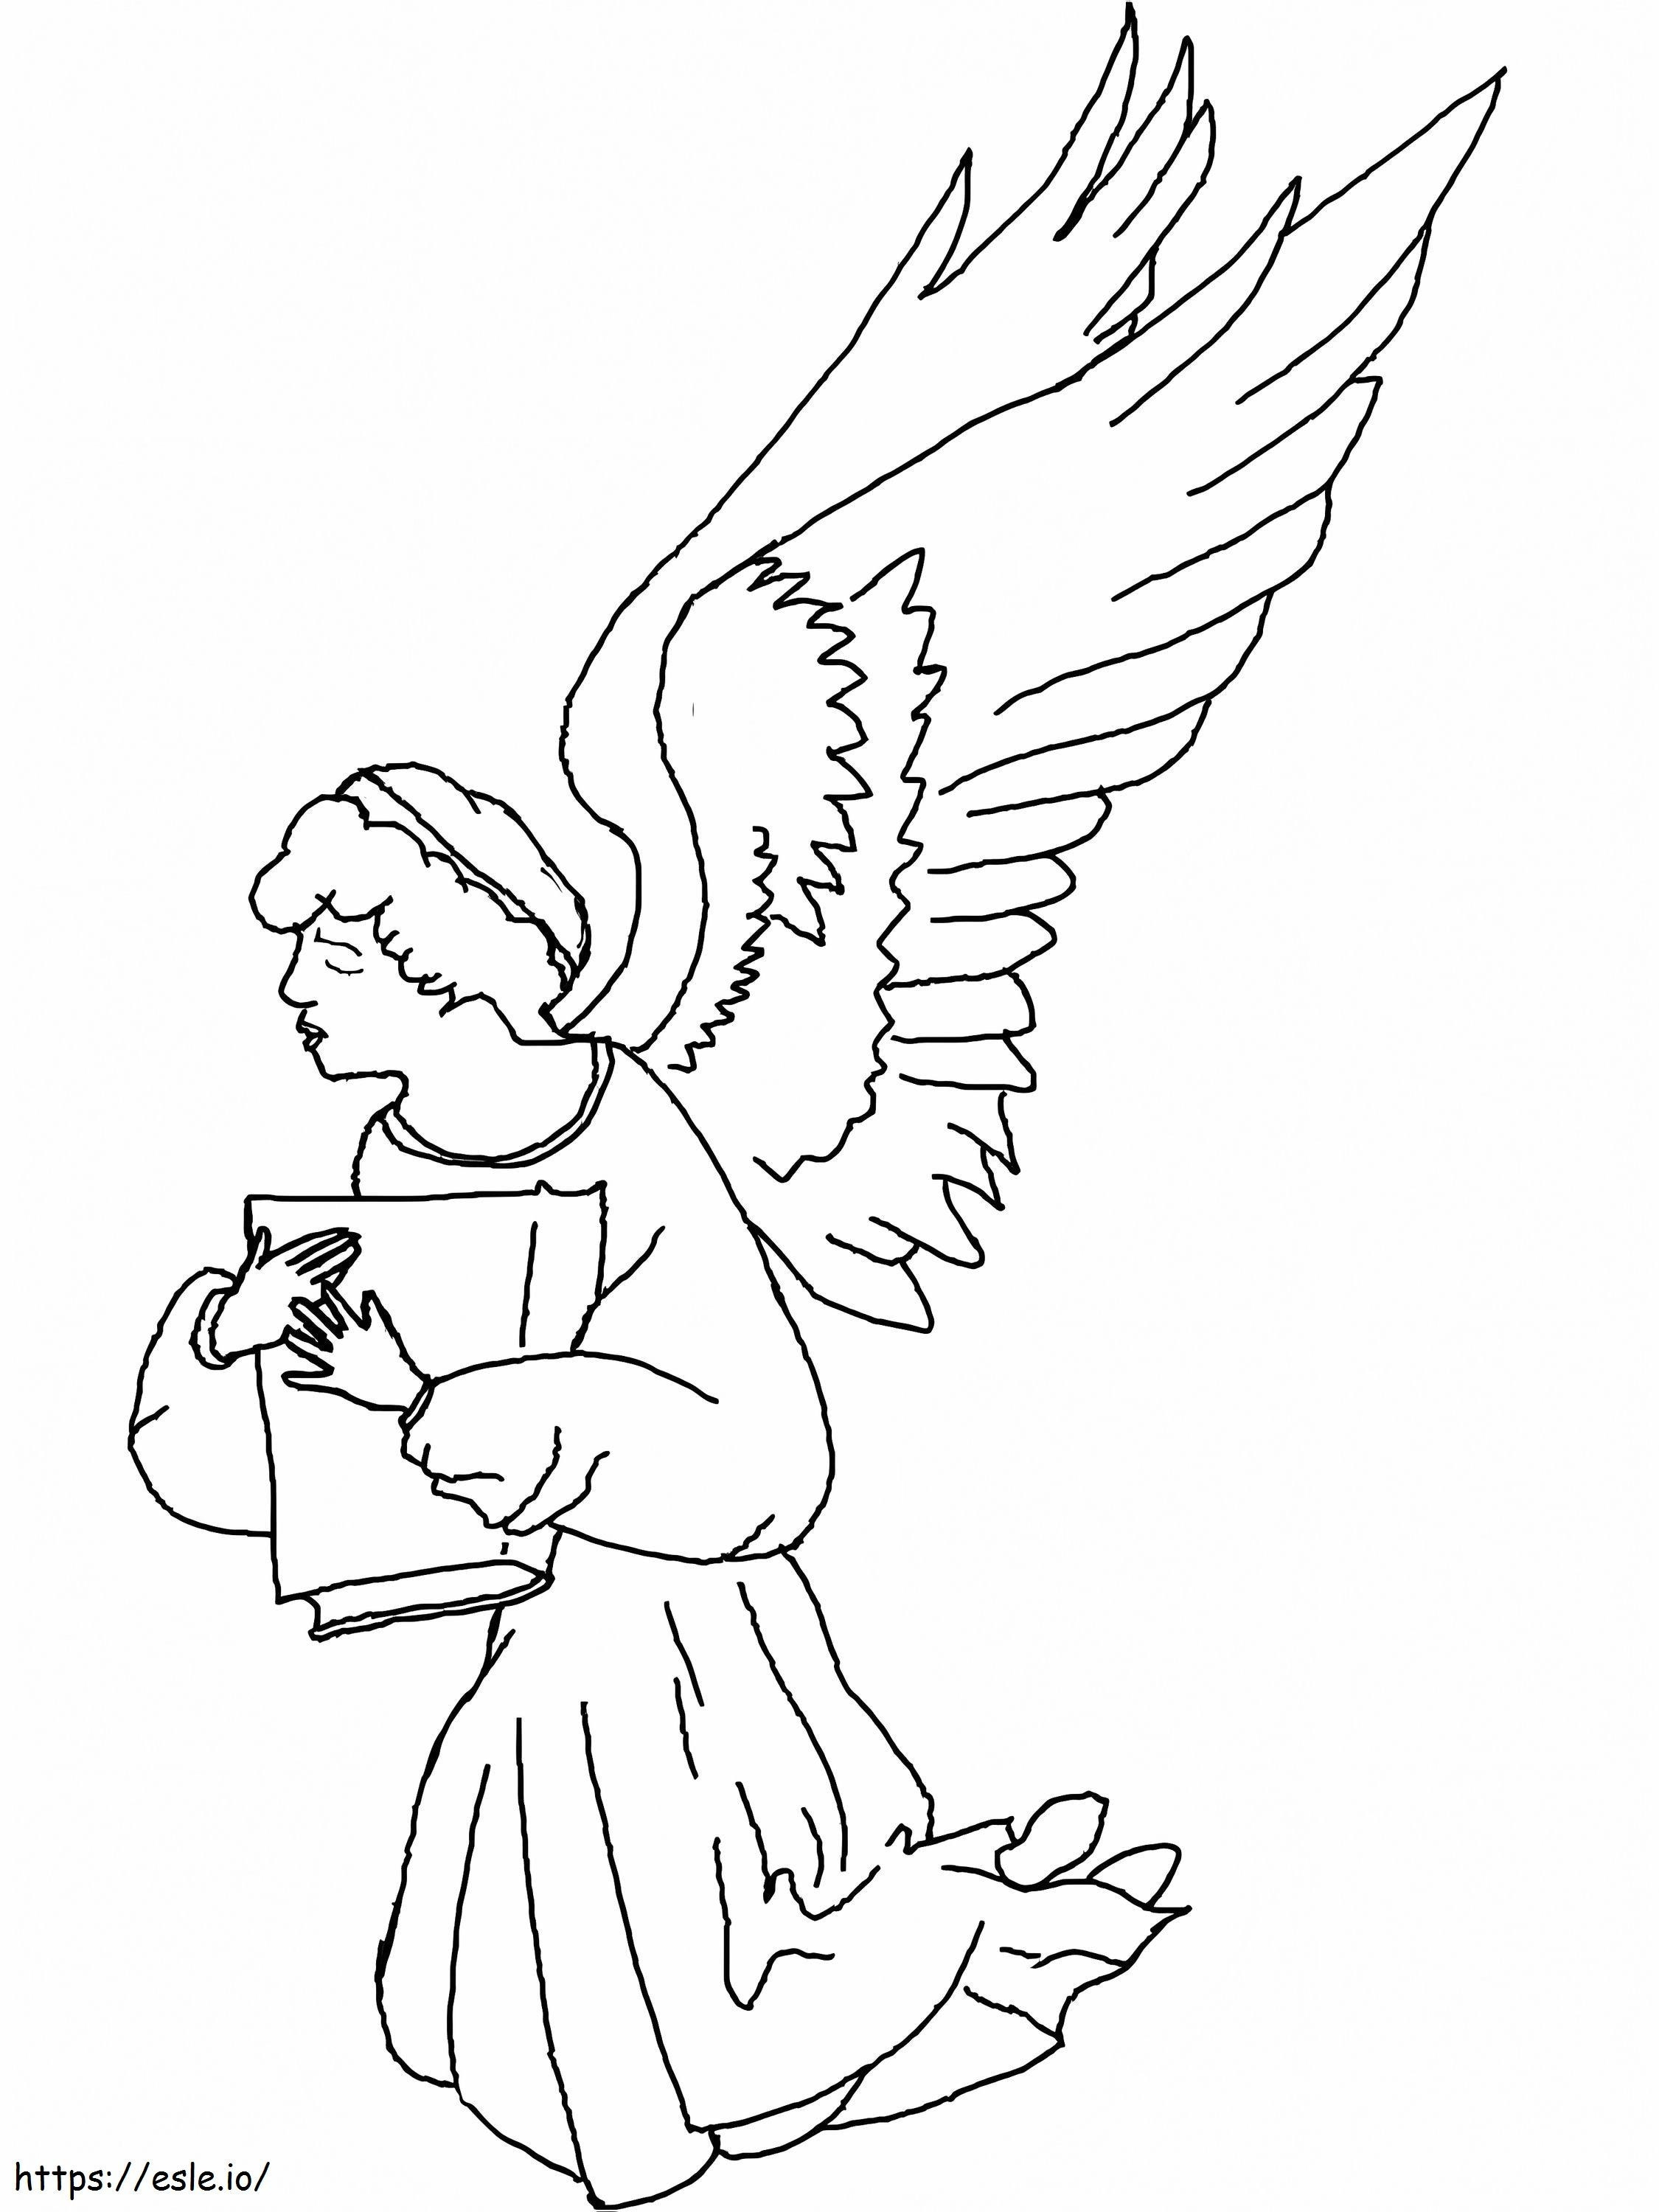 Engel met een boek kleurplaat kleurplaat